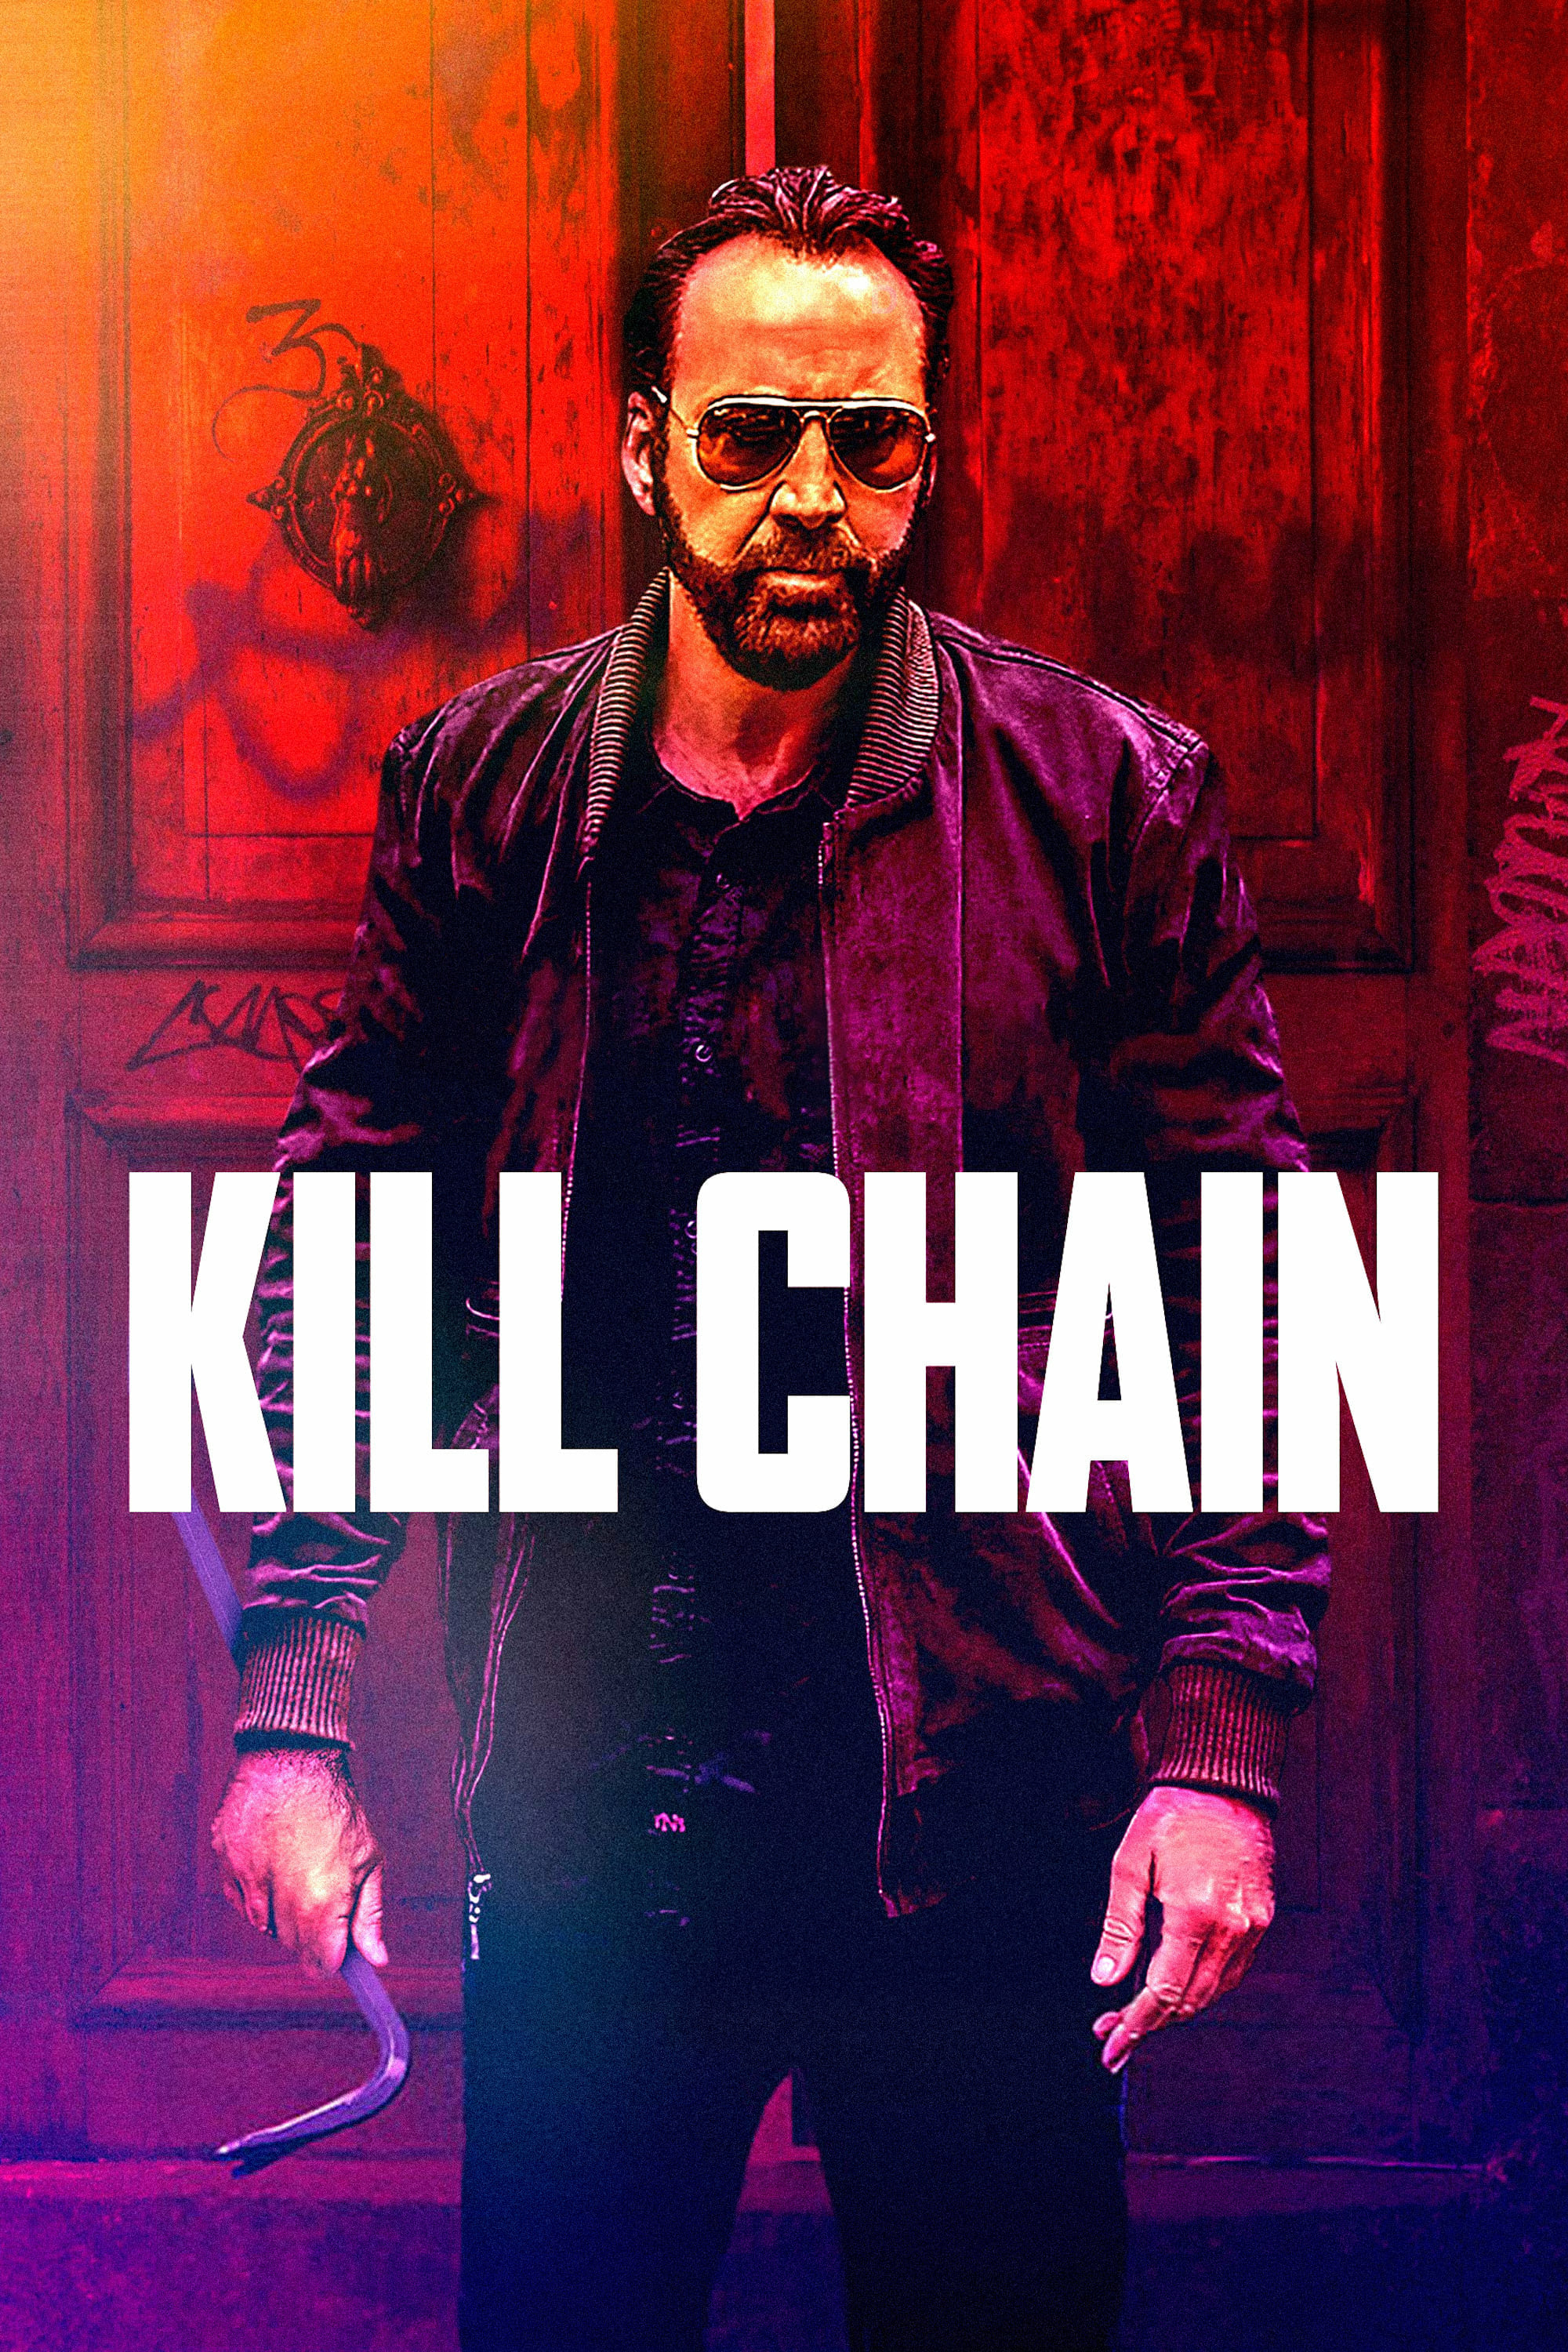 Chuỗi Chết Chóc (Kill Chain) [2019]